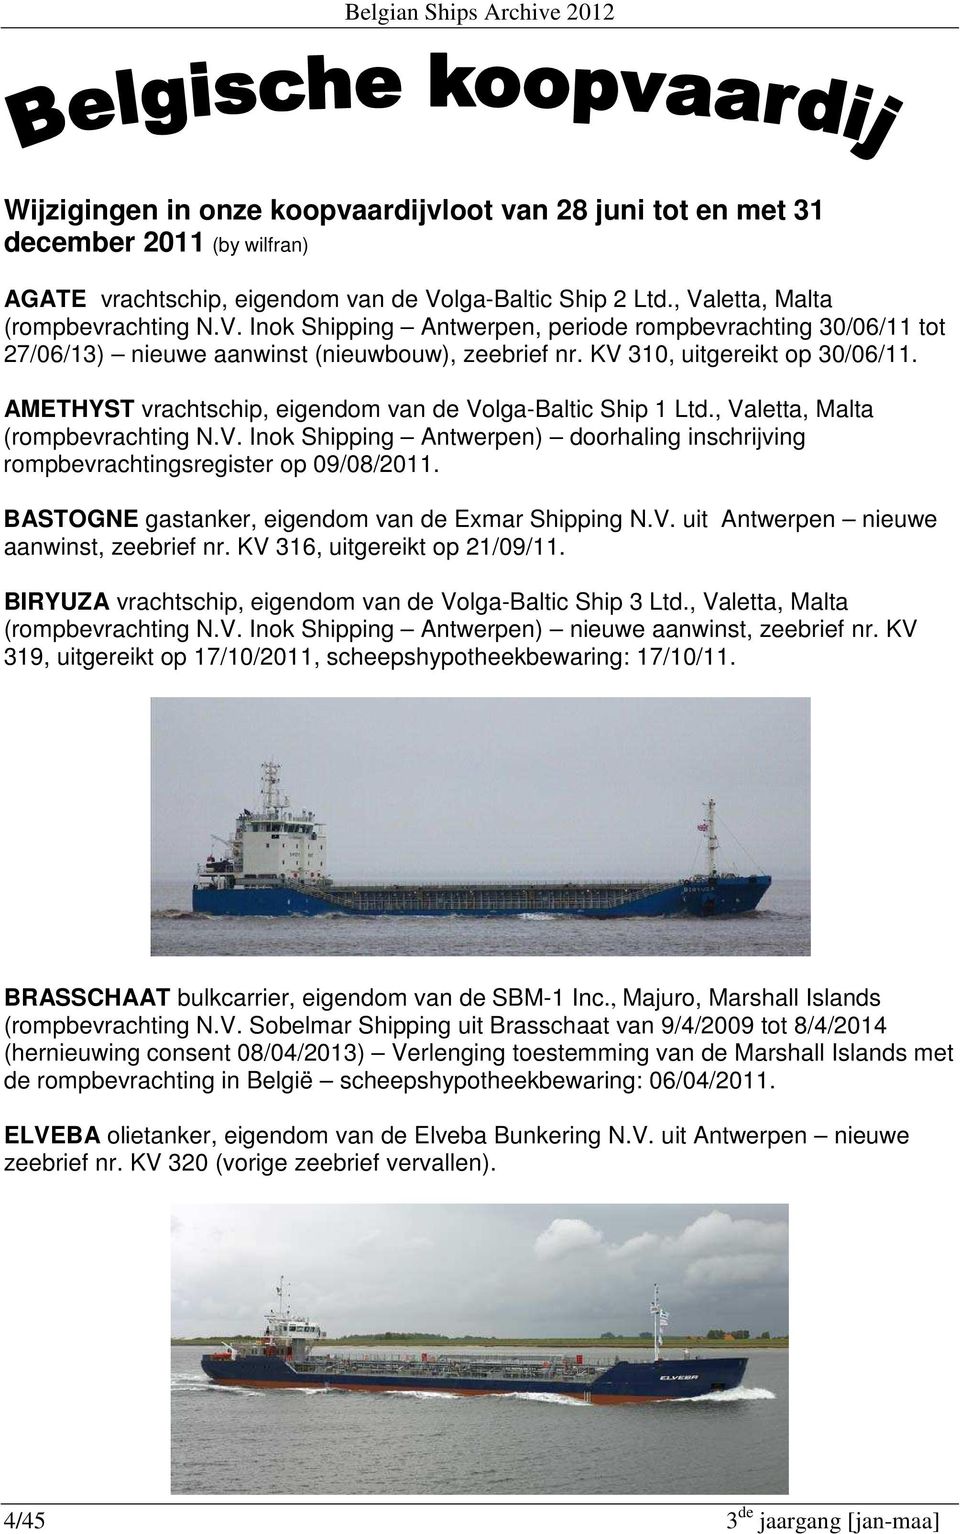 KV 310, uitgereikt op 30/06/11. AMETHYST vrachtschip, eigendom van de Volga-Baltic Ship 1 Ltd., Valetta, Malta (rompbevrachting N.V. Inok Shipping Antwerpen) doorhaling inschrijving rompbevrachtingsregister op 09/08/2011.